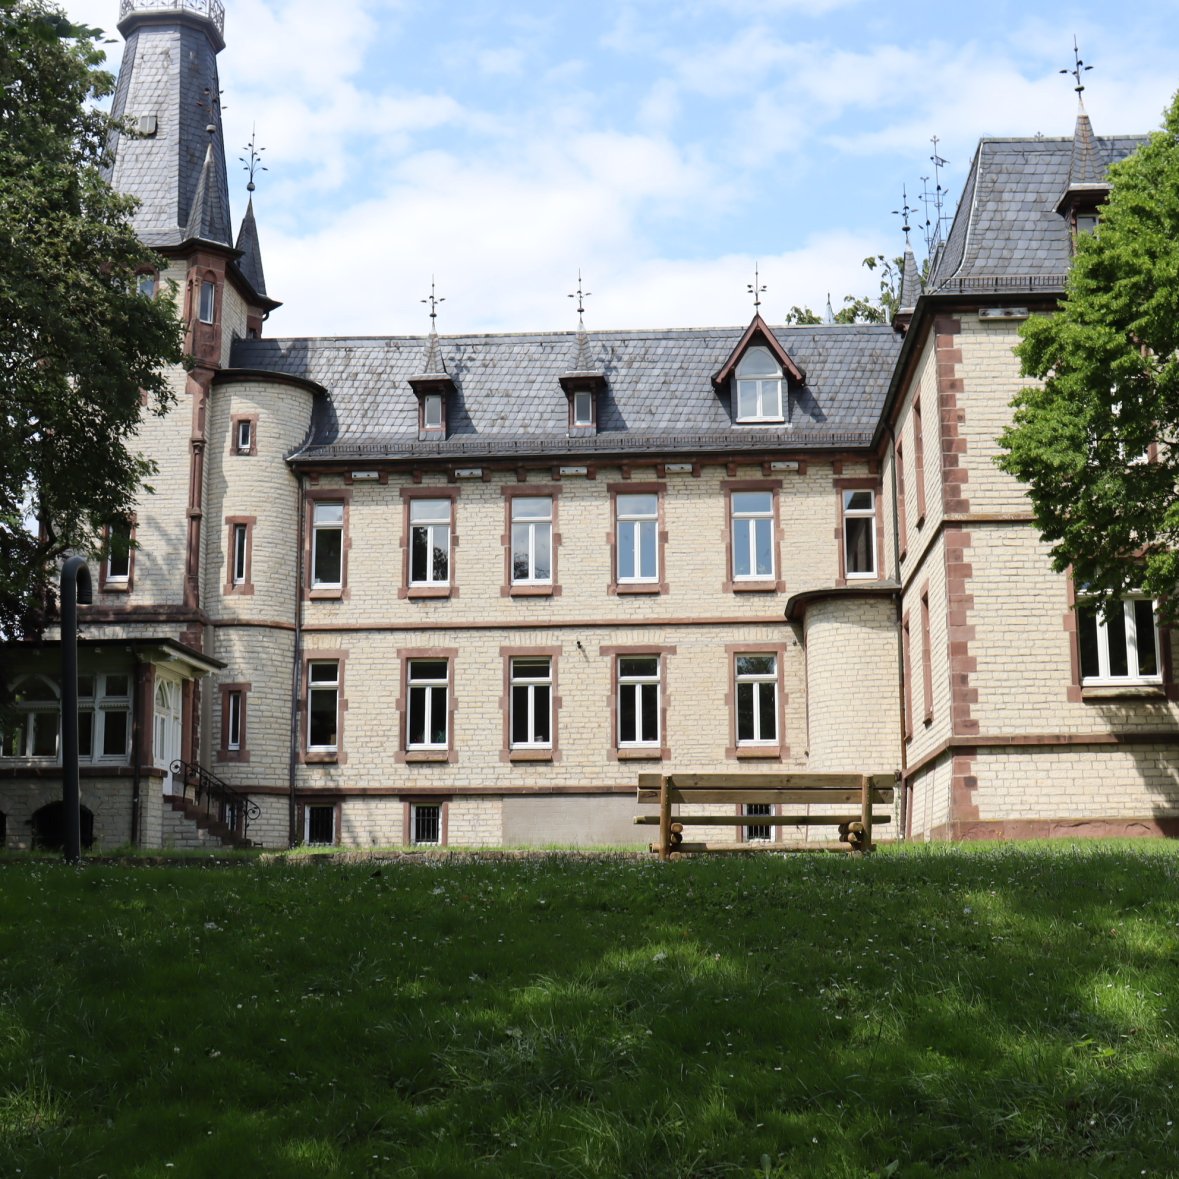 Ständehaus complete